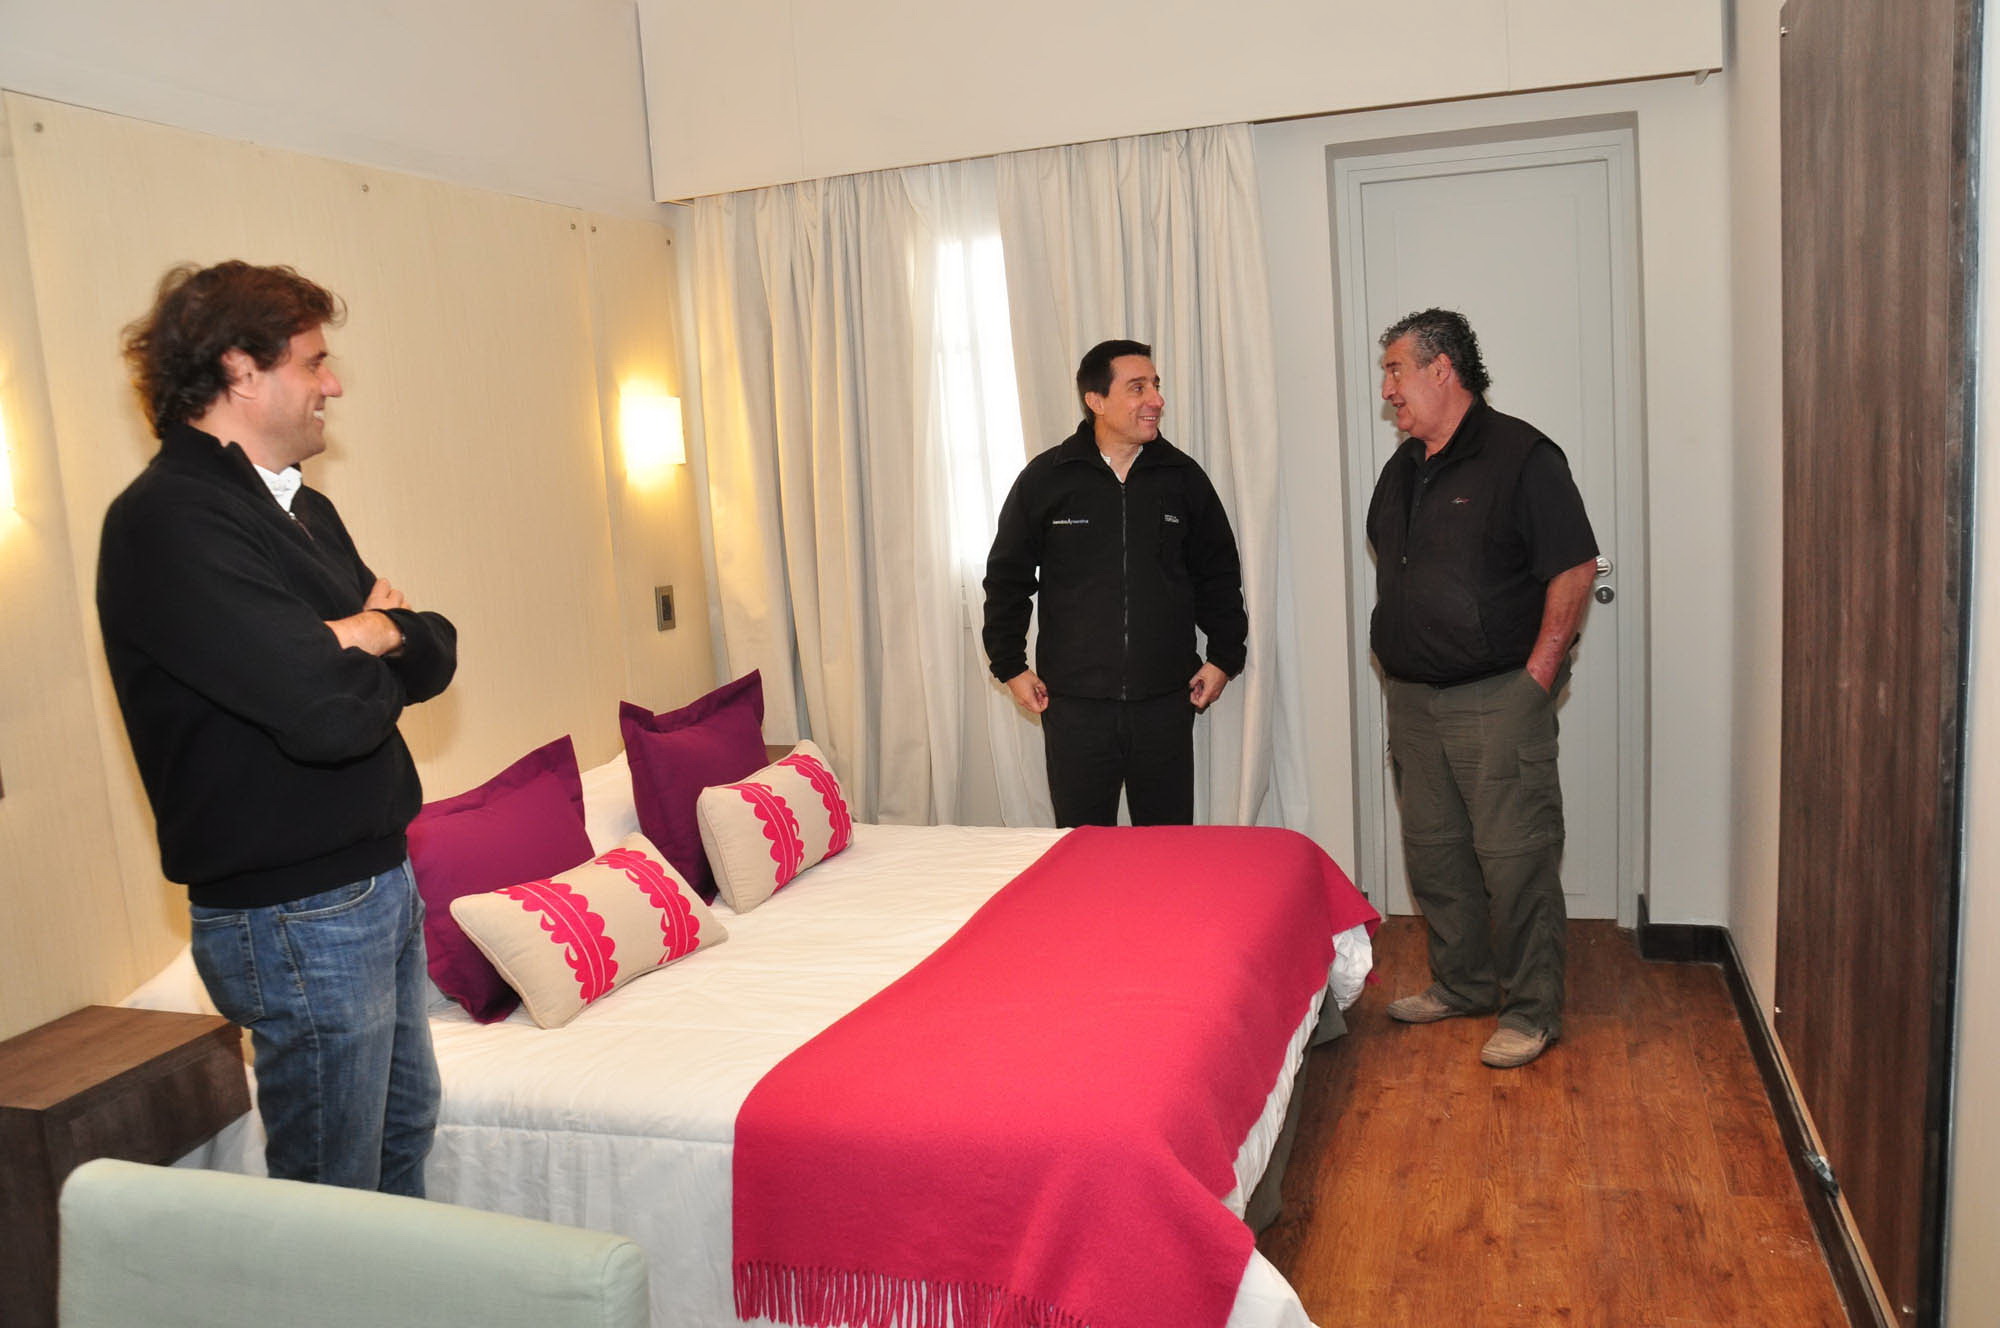 Potrerillos, Mendoza 29 mayo 2015 MINISTERIO DE TURISMO El ministro de Turismo, Javier Espina,visito los avances de las obras del Hotel de Potrerillos y junto a los propietarios anunciaron la apertura del lugar.